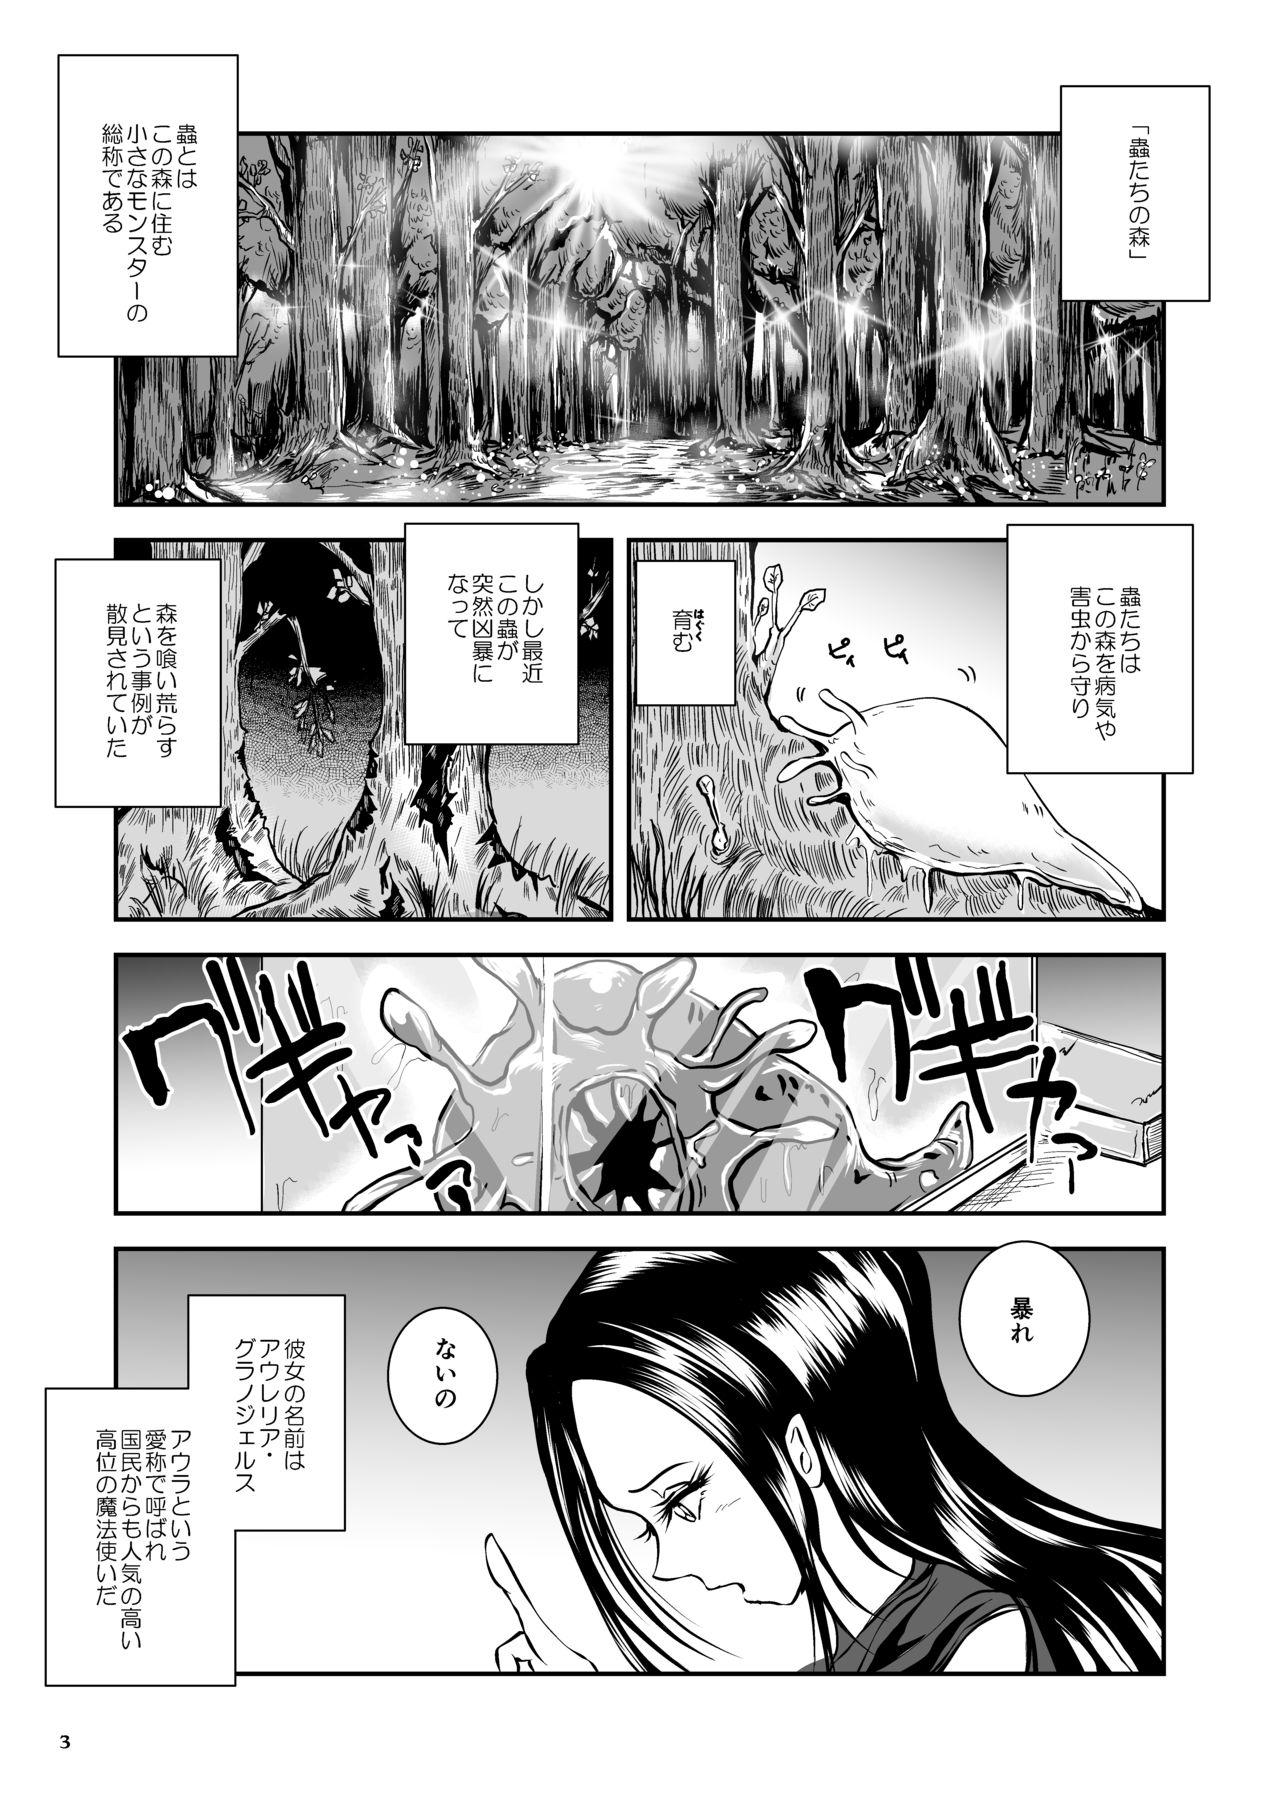 Foreplay Oonamekuji to Kurokami no Mahoutsukai - Parasitized Giant Slugs V.S. Sorceress of the Black Hair as Aura Lezdom - Page 3